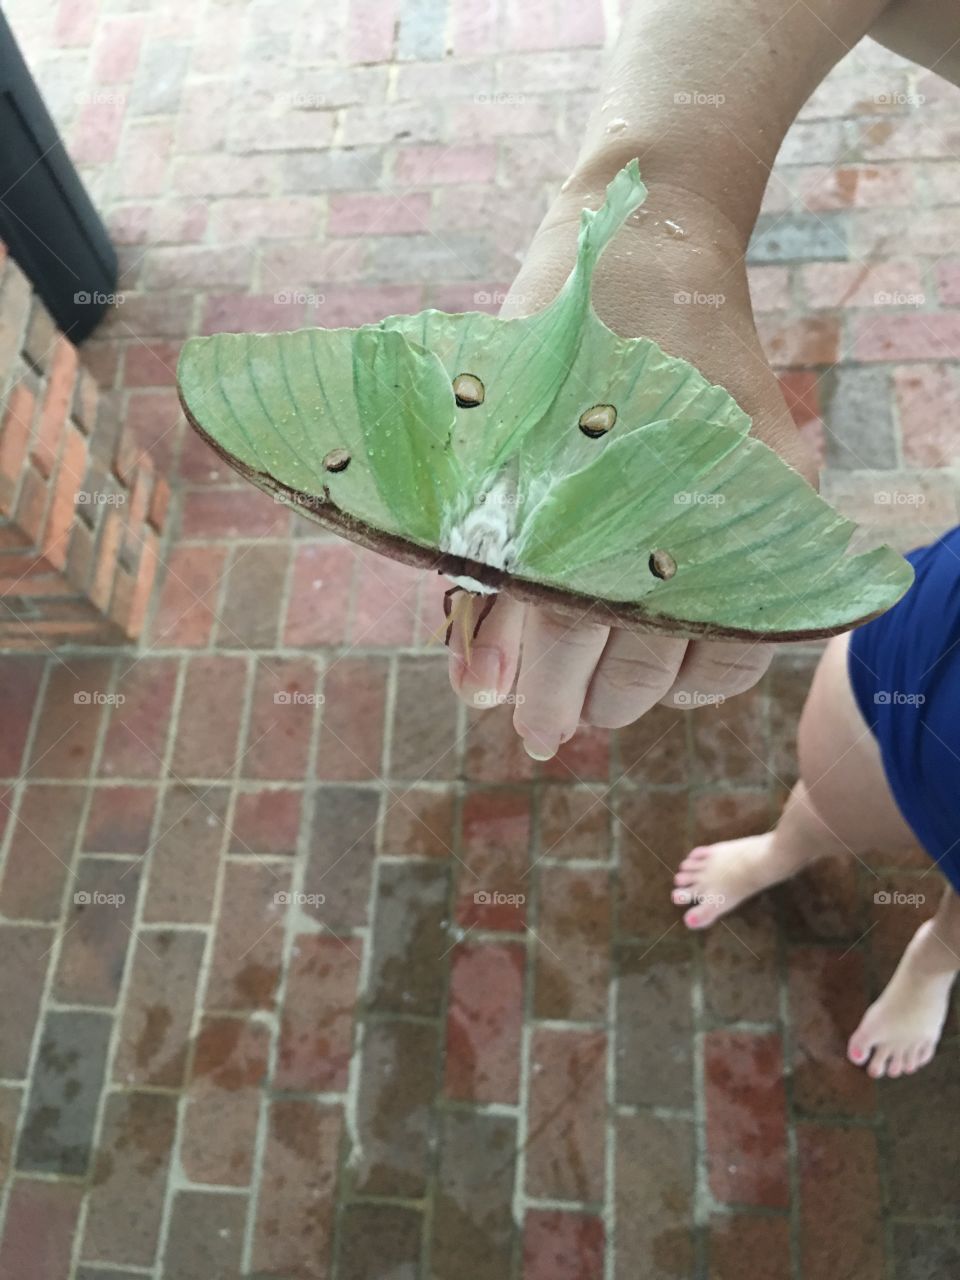 A rare sighting of a Luna Moth